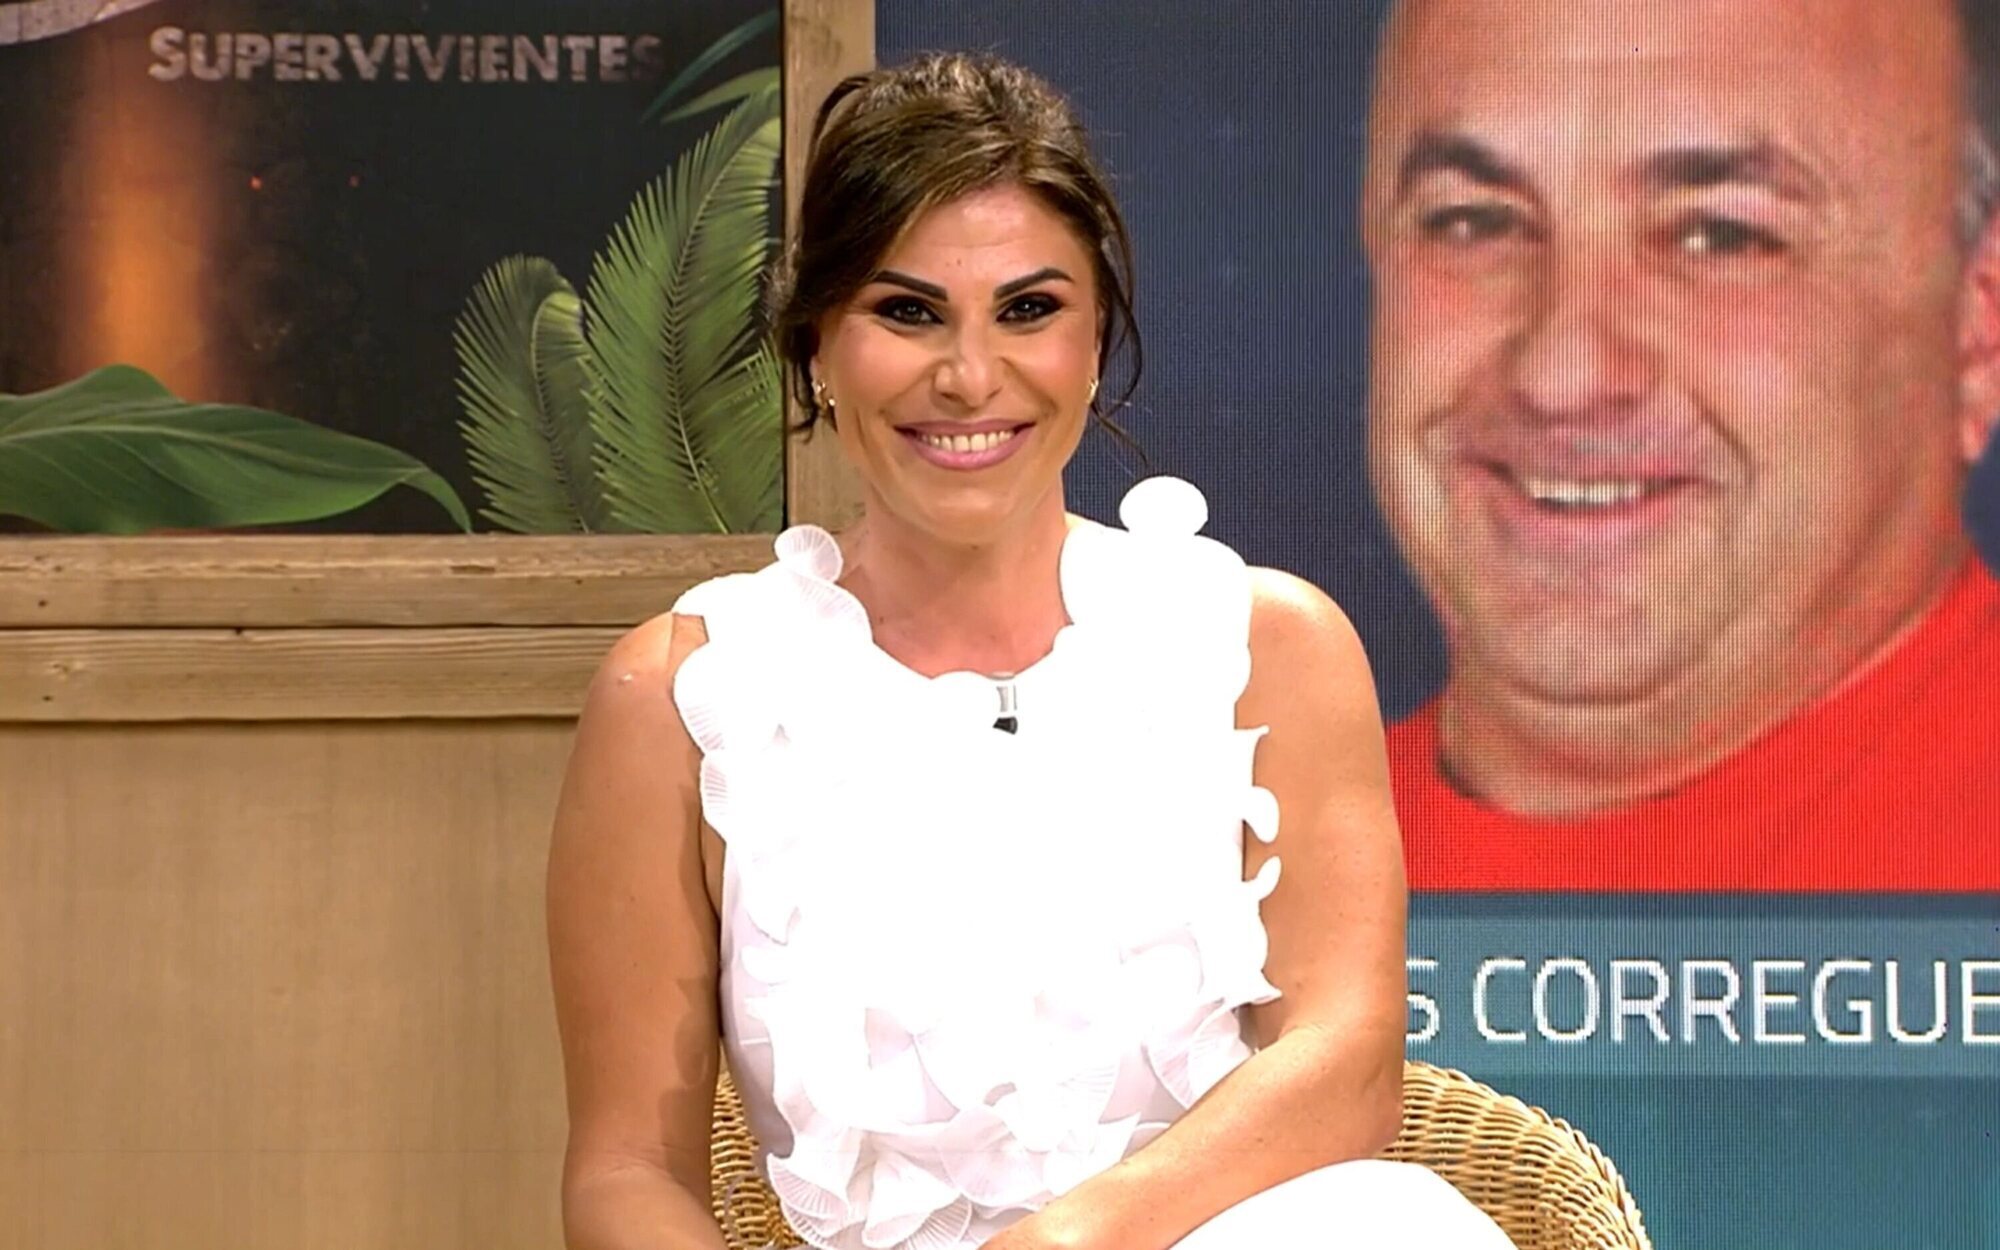 La hija de Ginés Corregüela se enfrenta en directo en 'Deluxe' a Yaiza Martín, novia de su padre: "Ridícula"